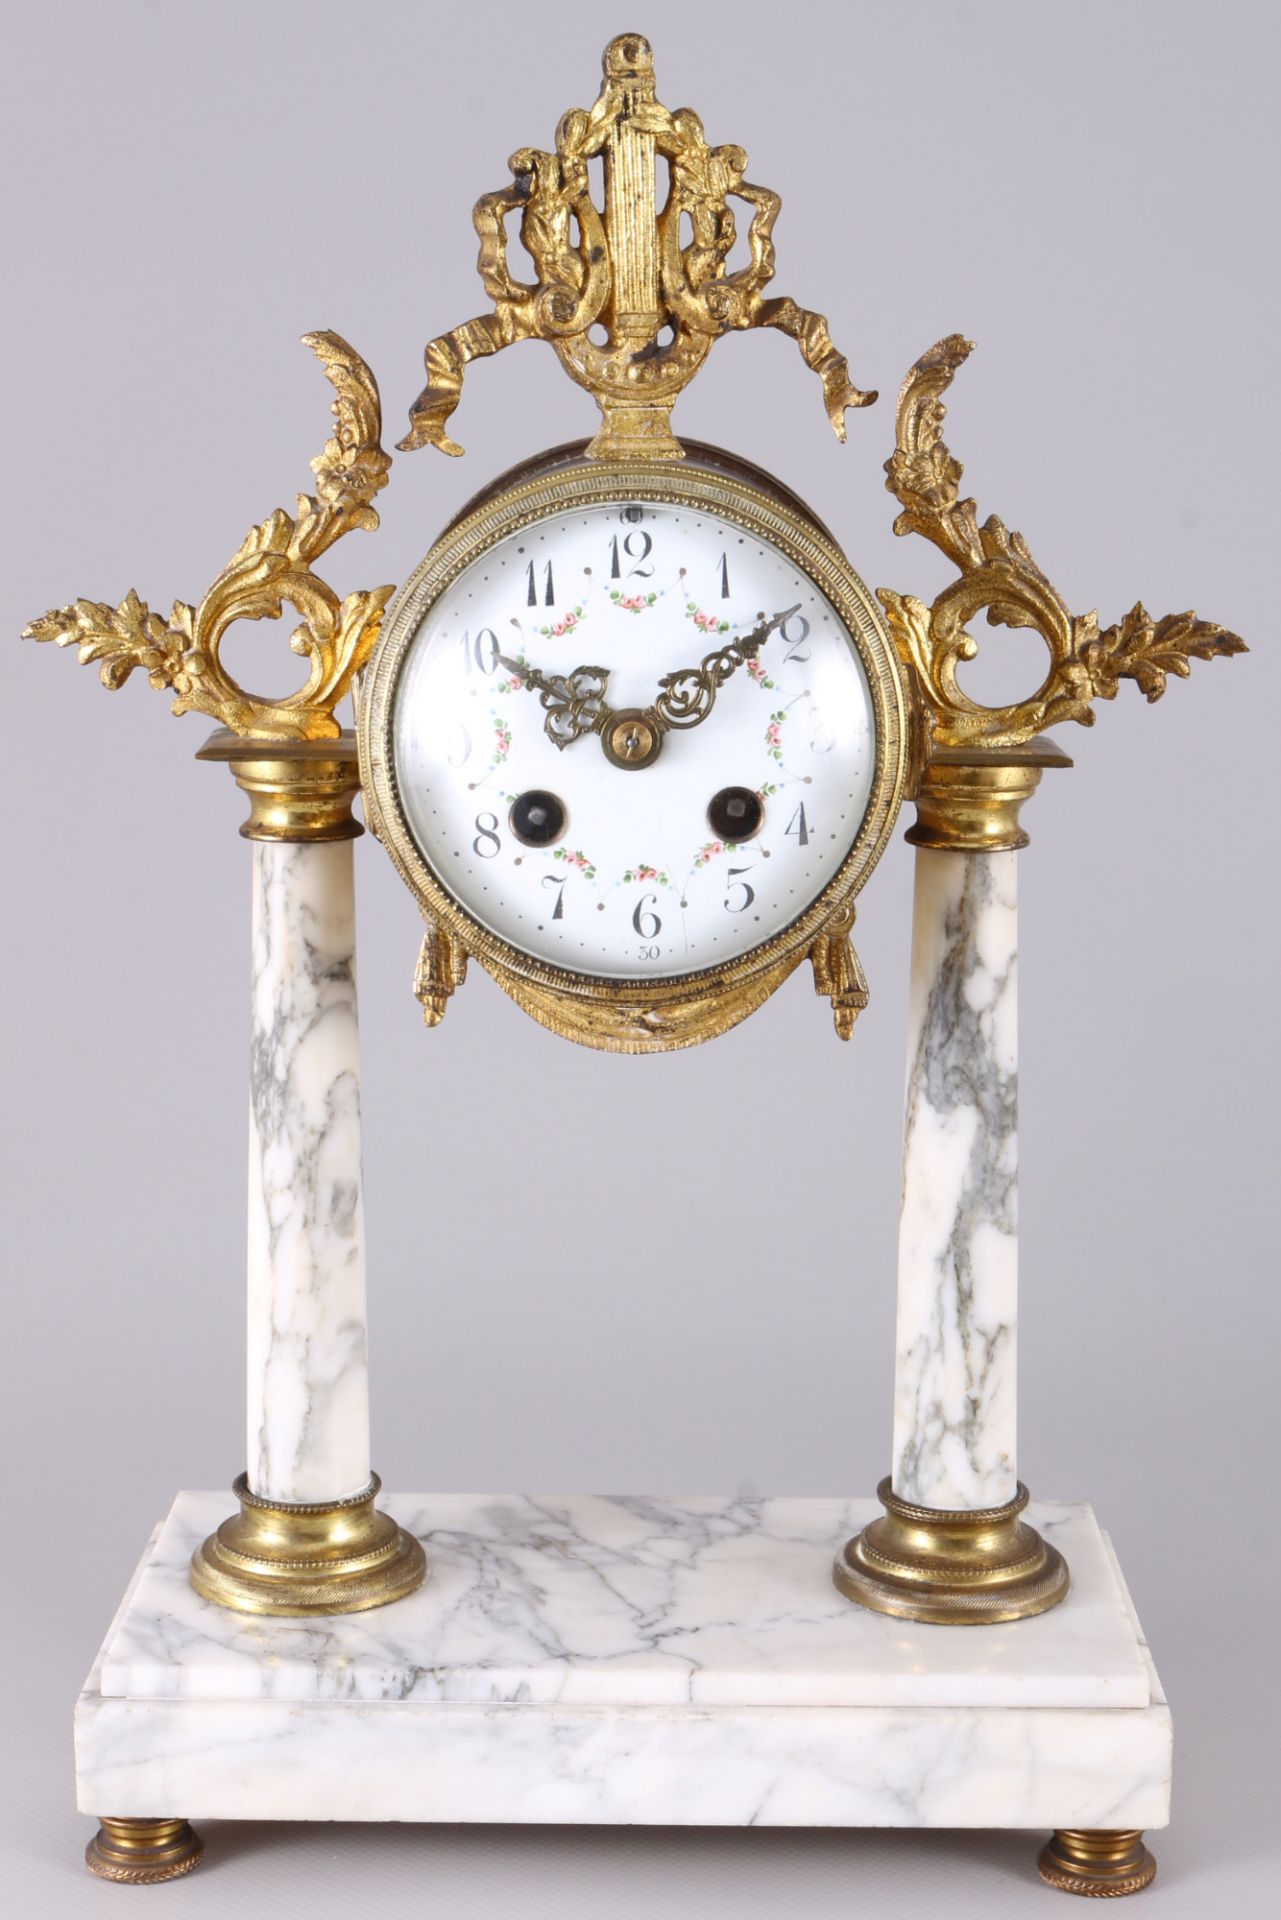 French mantel clock ca. 1900, Kaminuhr mit Leuchterpaar, Frankreich um 1900 - Image 2 of 4